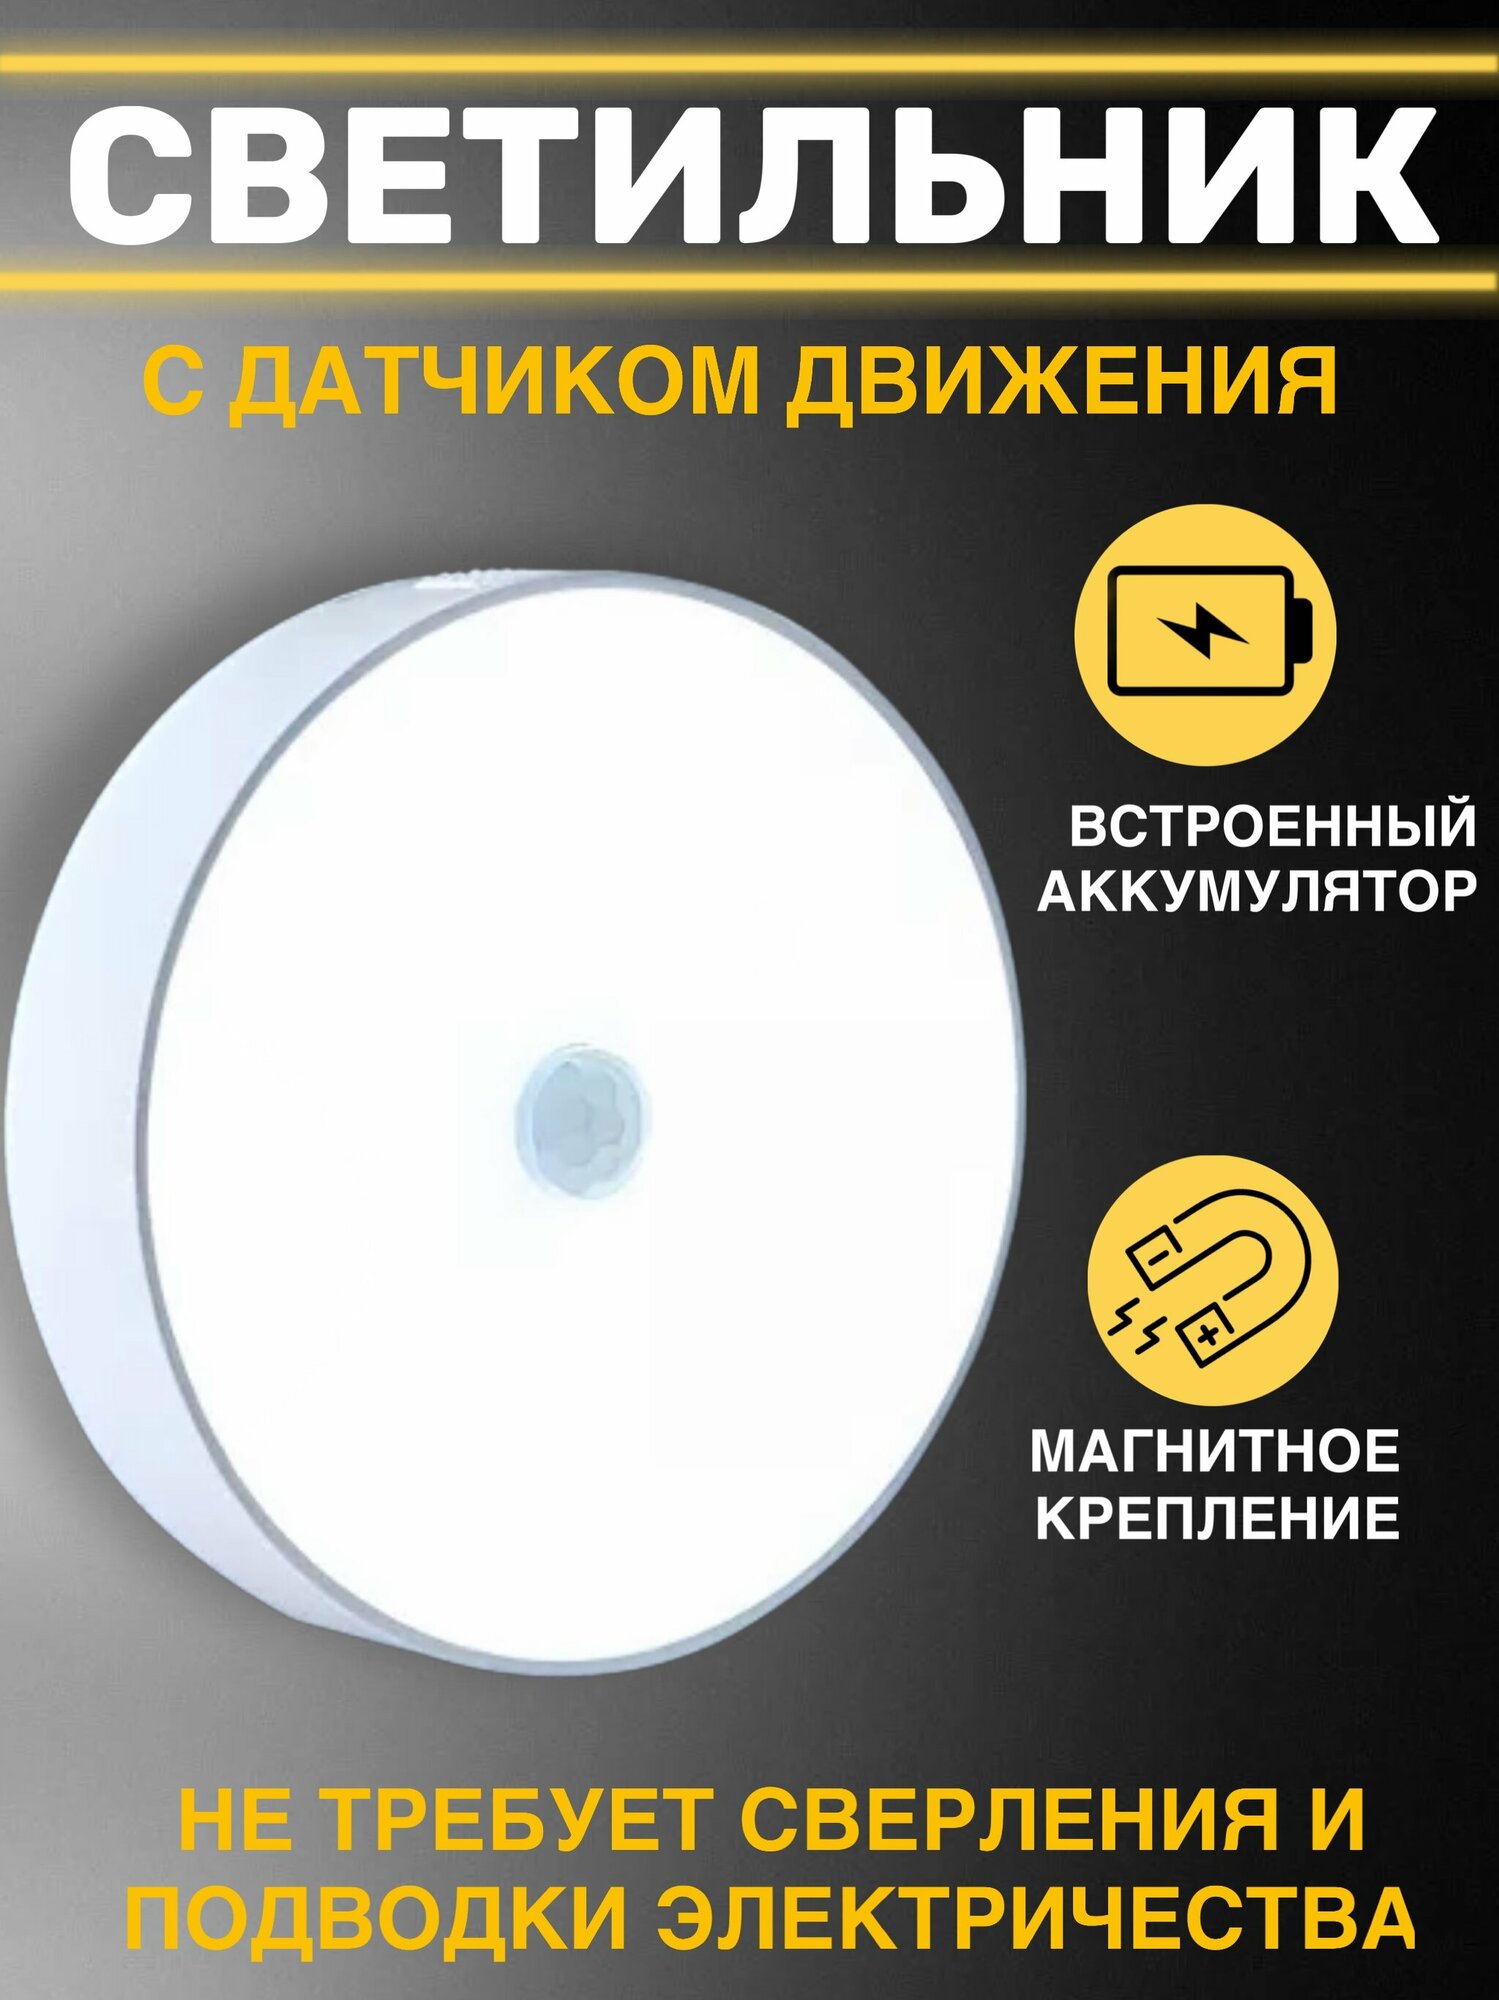 Беспроводной светодиодный LED светильник ночник лампа с датчиком движения на аккумуляторе (аккумулятор 900 mAh и USB шнур в комплекте)